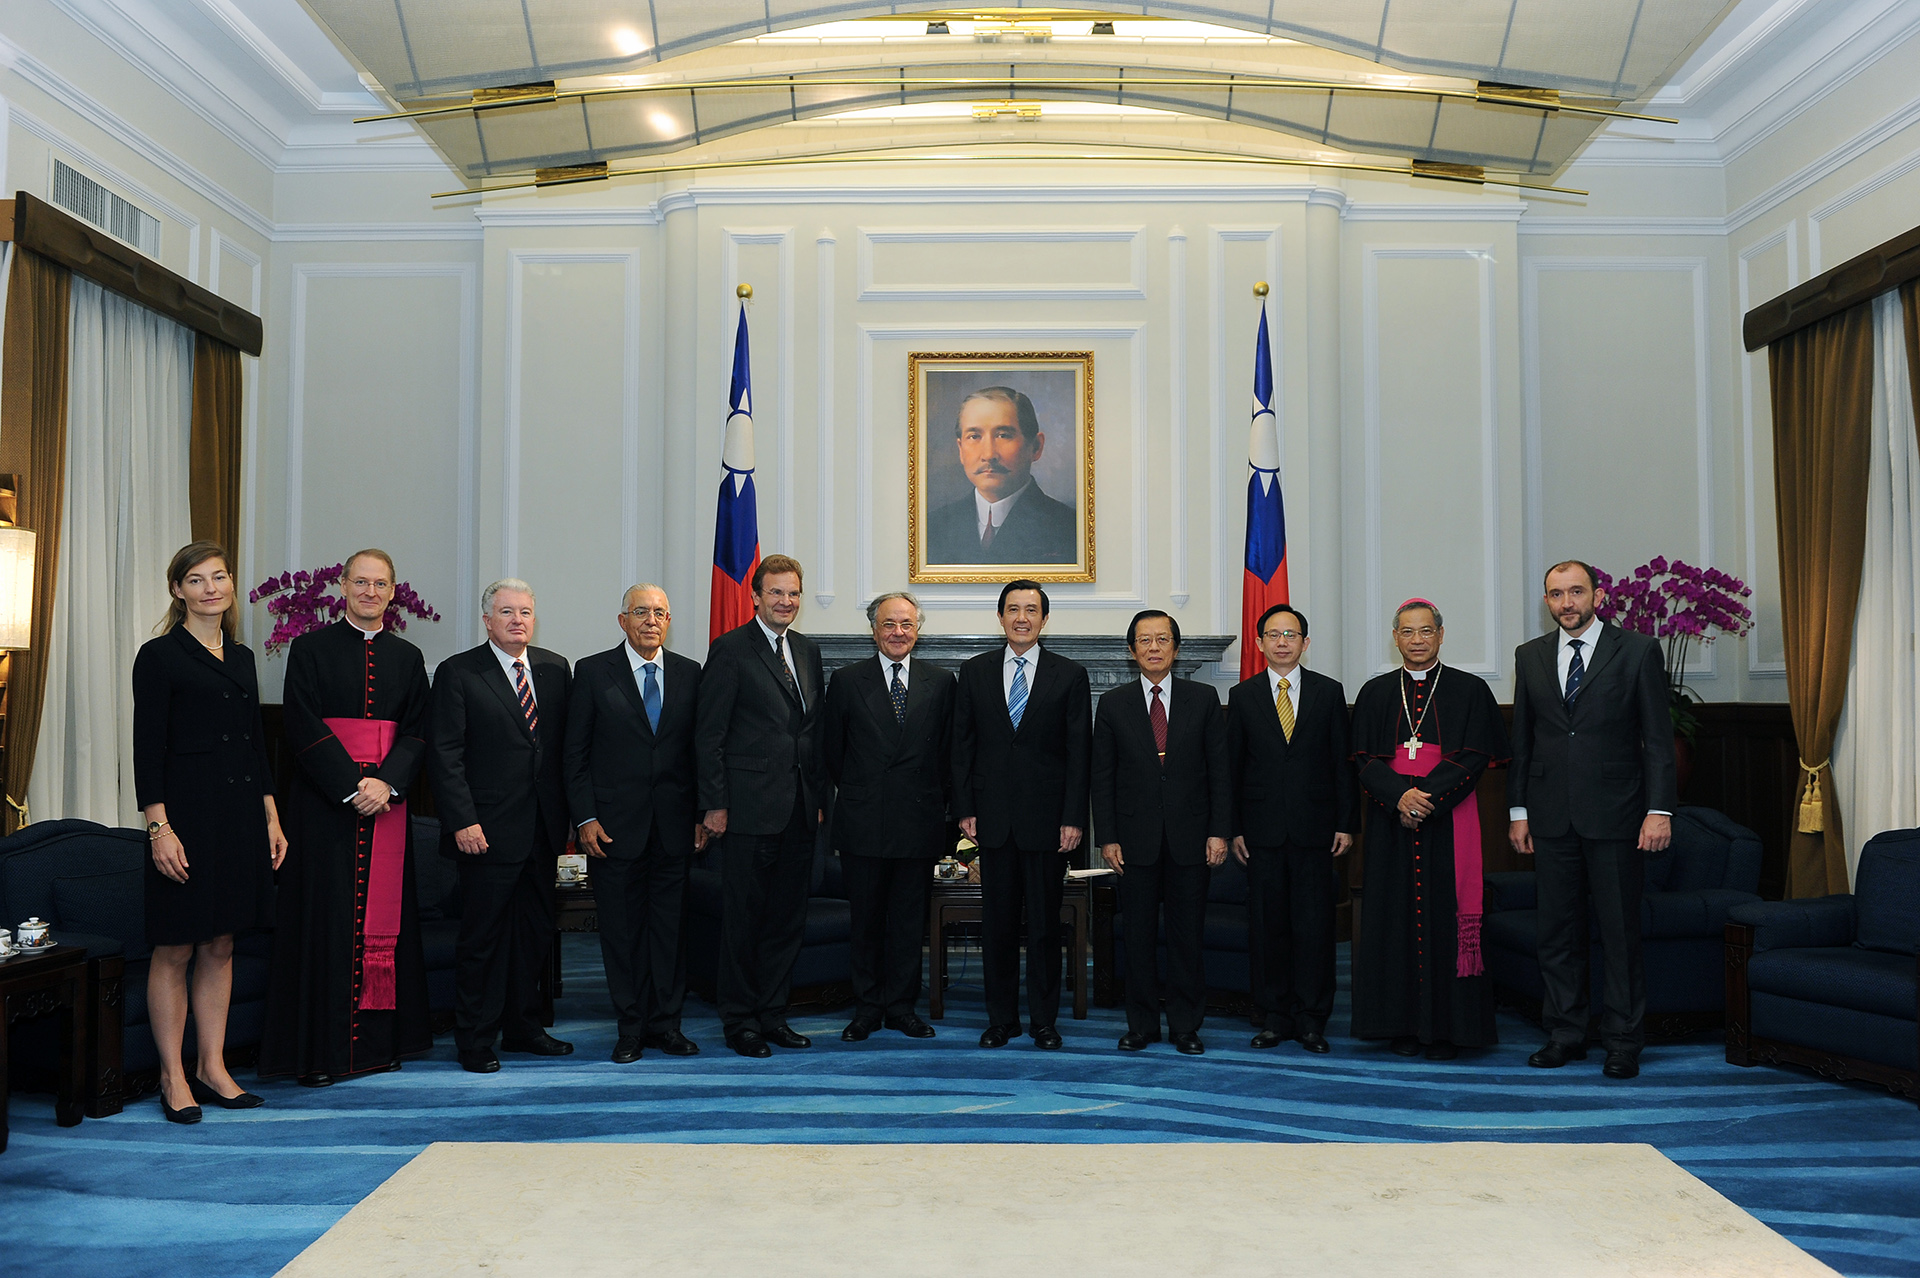 Jean-Pierre Mazery, Gran Cancelliere del Sovrano Ordine di Malta, visita la Repubblica di Cina (Taiwan)